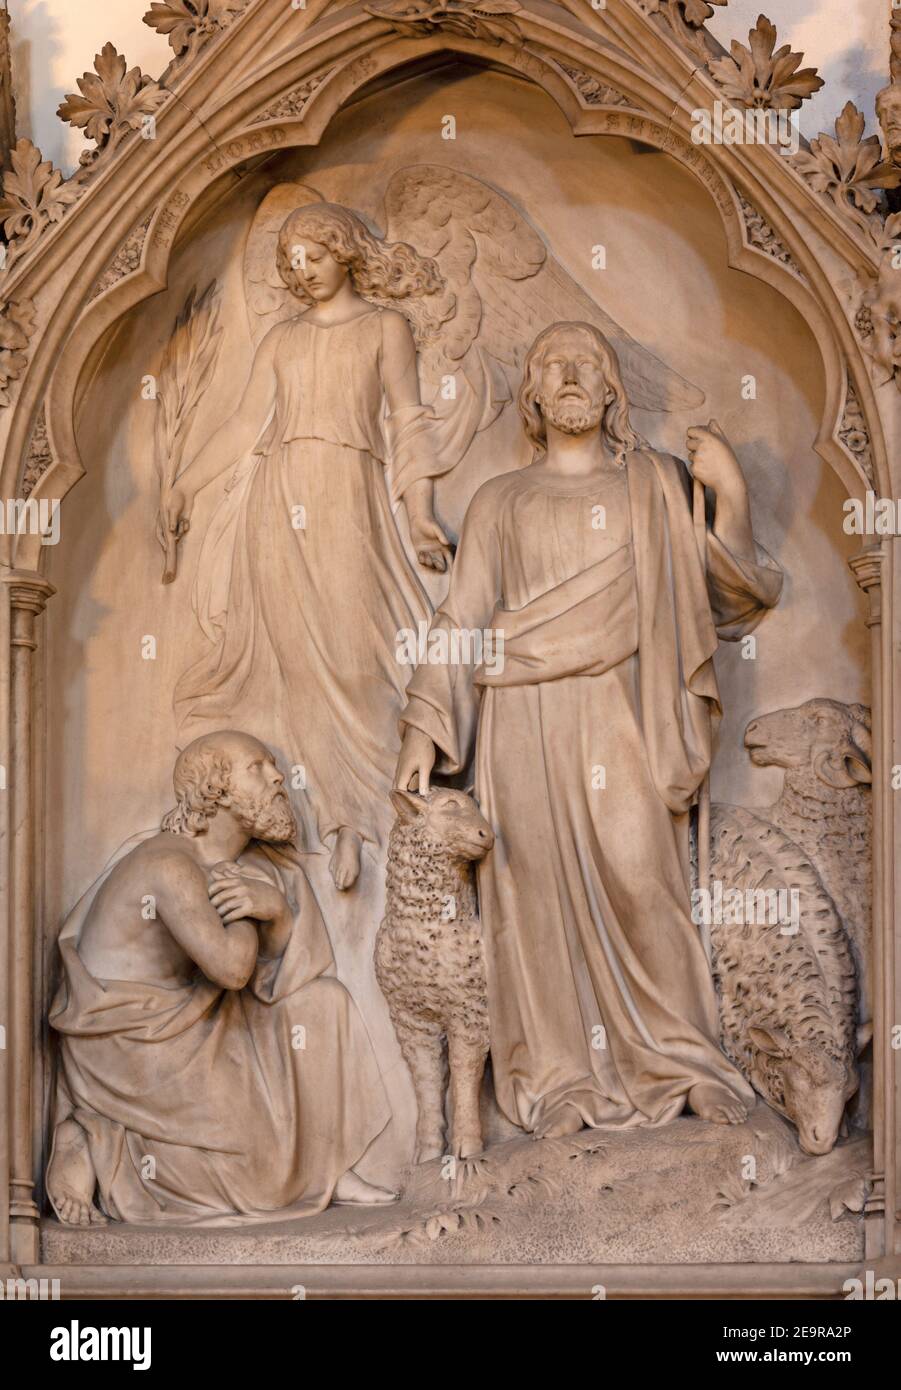 LONDRA, GRAN BRETAGNA - 19 SETTEMBRE 2017: Il rilievo marmoreo di Gesù come buon Pastore nella chiesa di St Stephen's Rochester Row di G.G. Adams (1855). Foto Stock